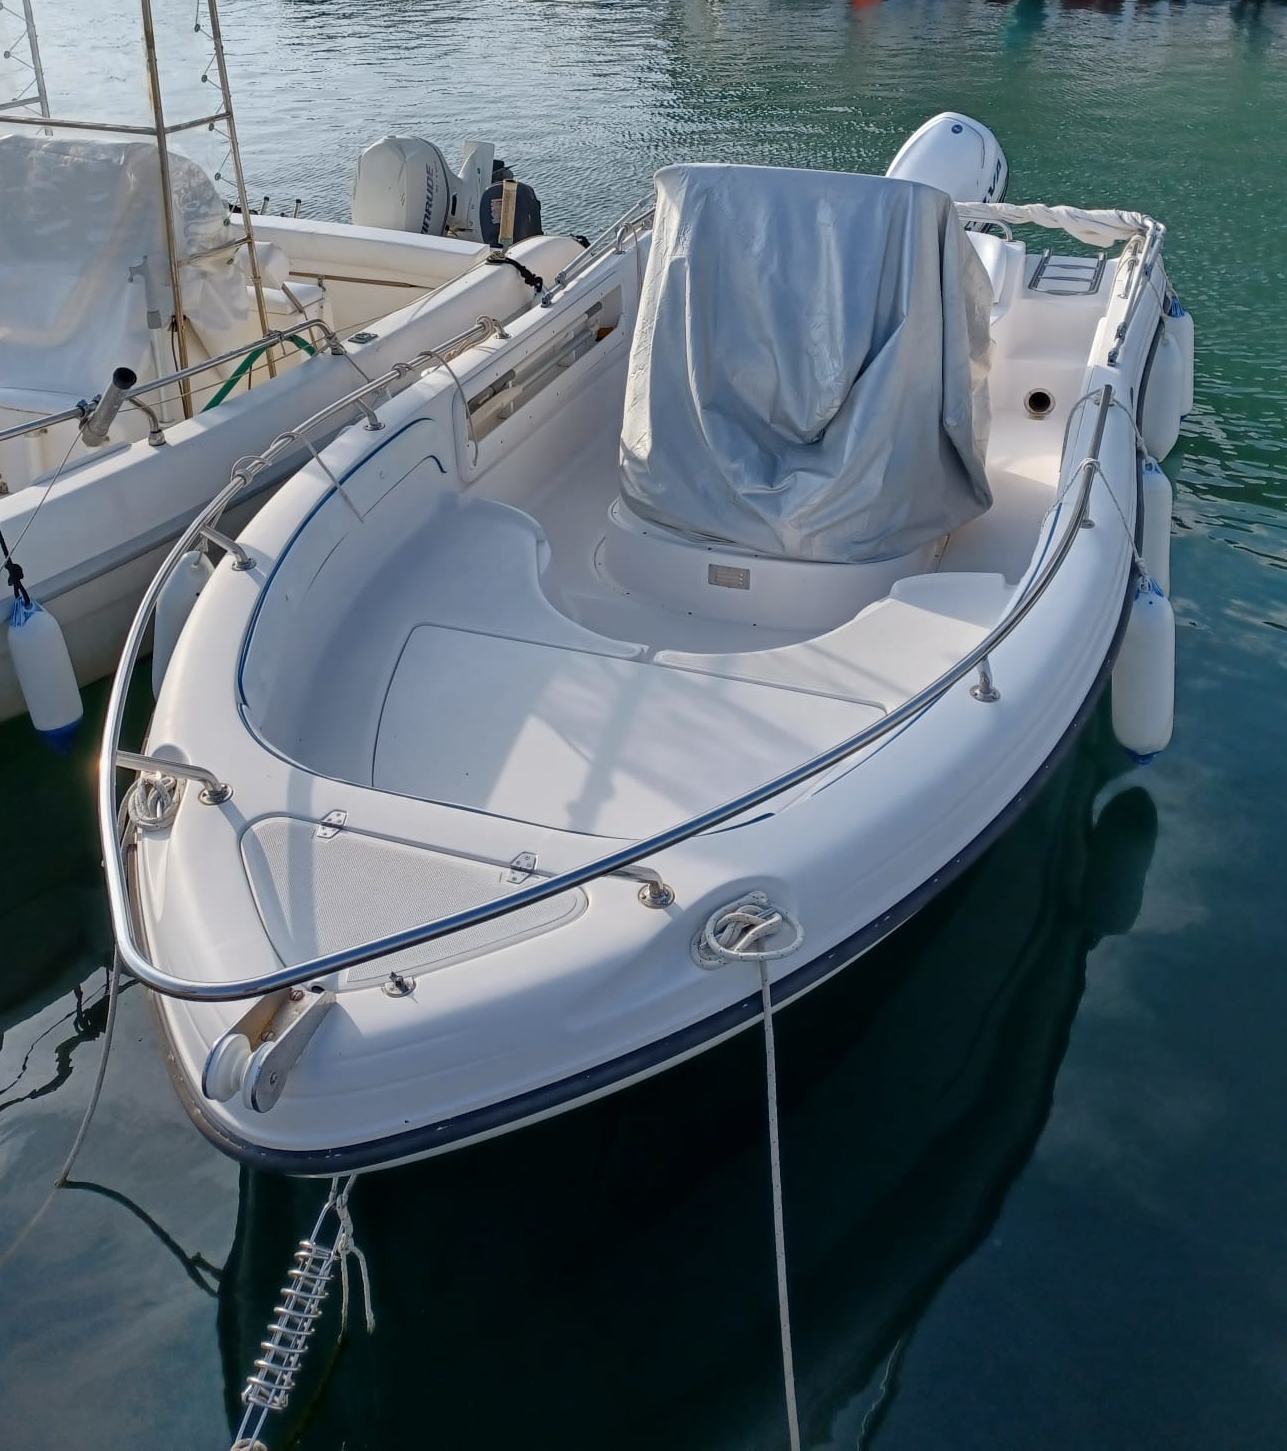 Ranieri 560 Path Finder + Selva 115 hp (2012) yamaha livorno boats open boat barco bateaux prendisole fuoribordo